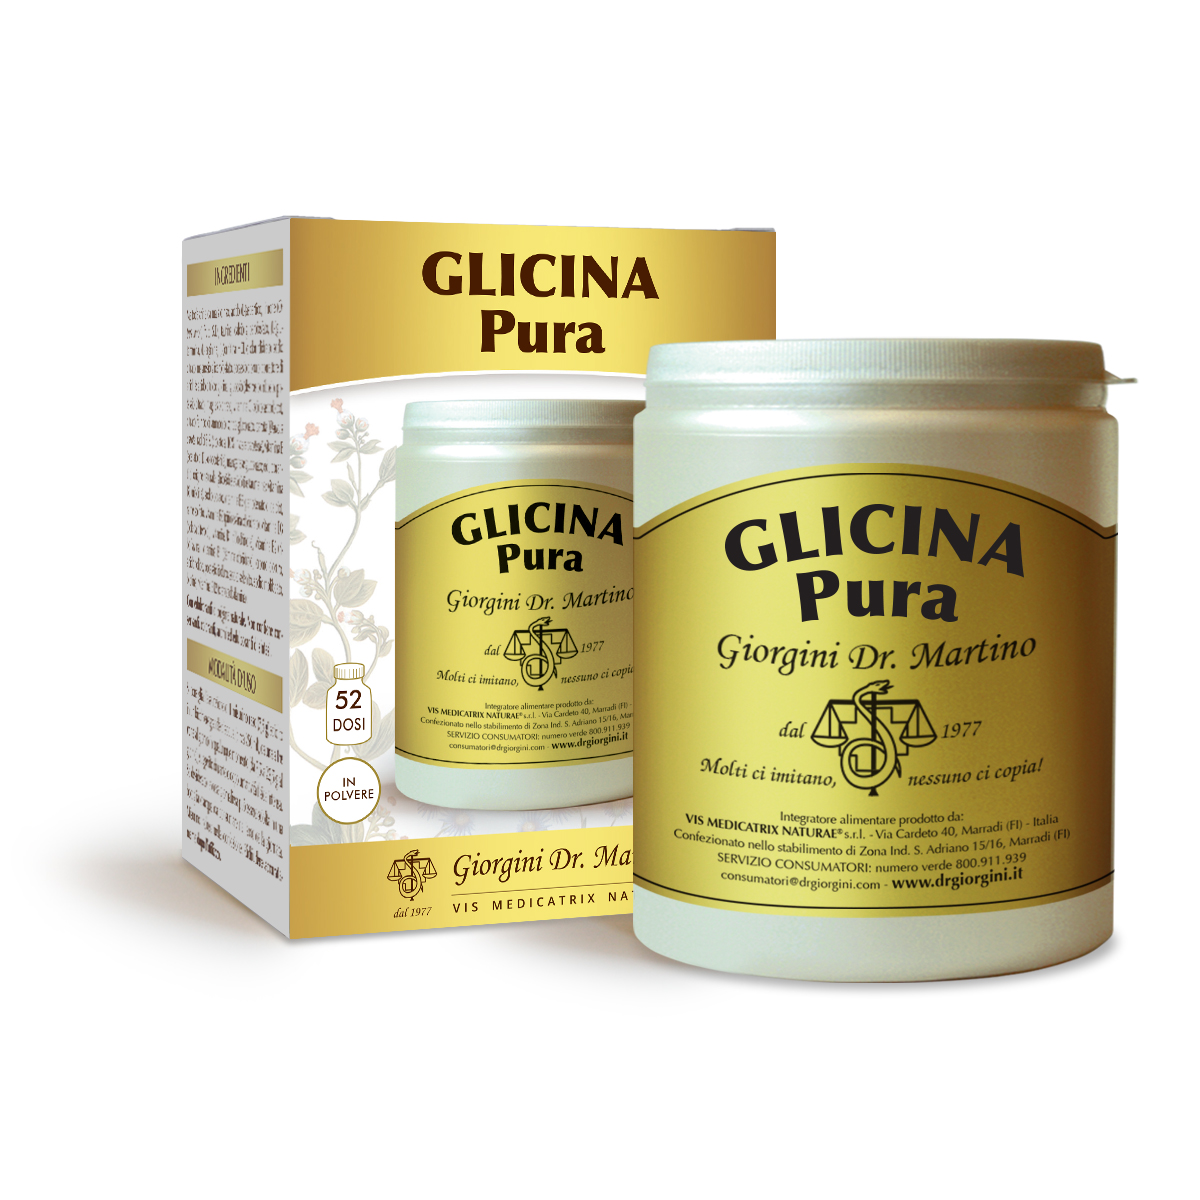 GLICINA Pura polvere solubile250g